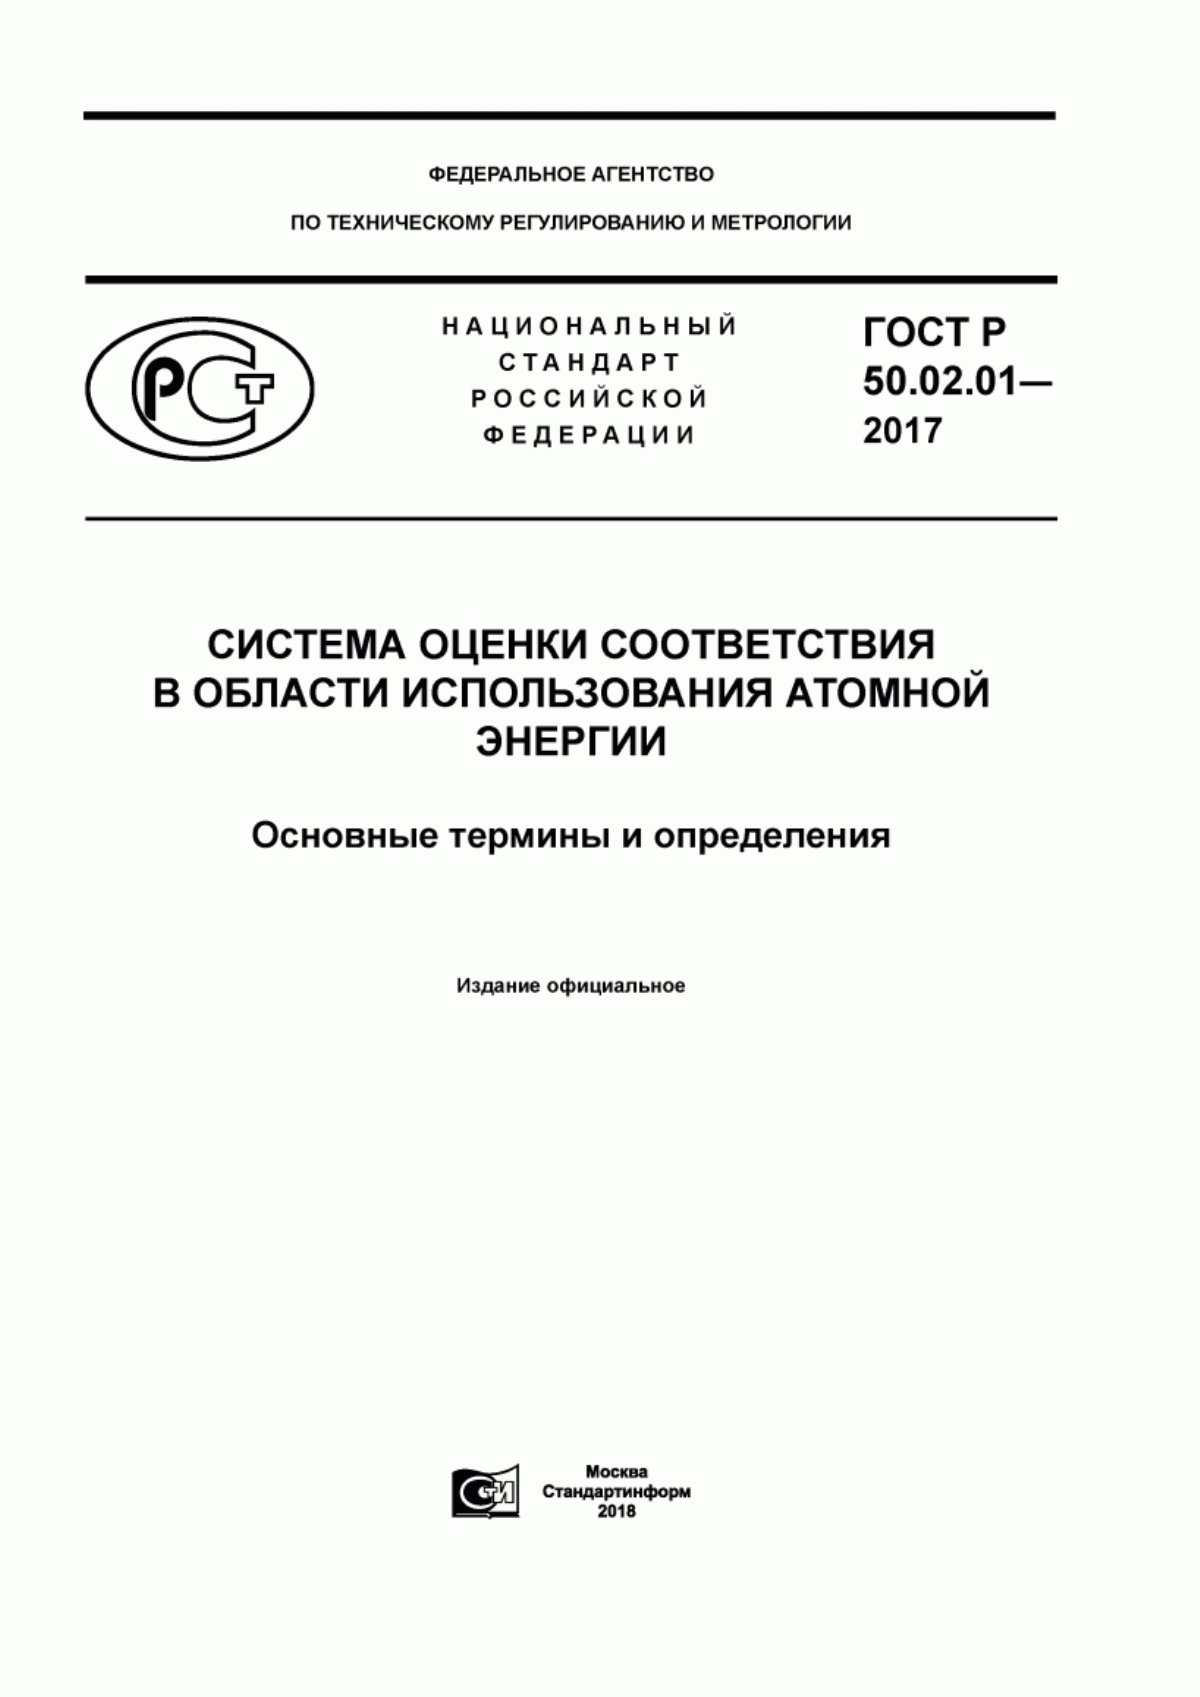 ГОСТ Р 50.02.01-2017 Система оценки соответствия в области использования атомной энергии. Основные термины и определения